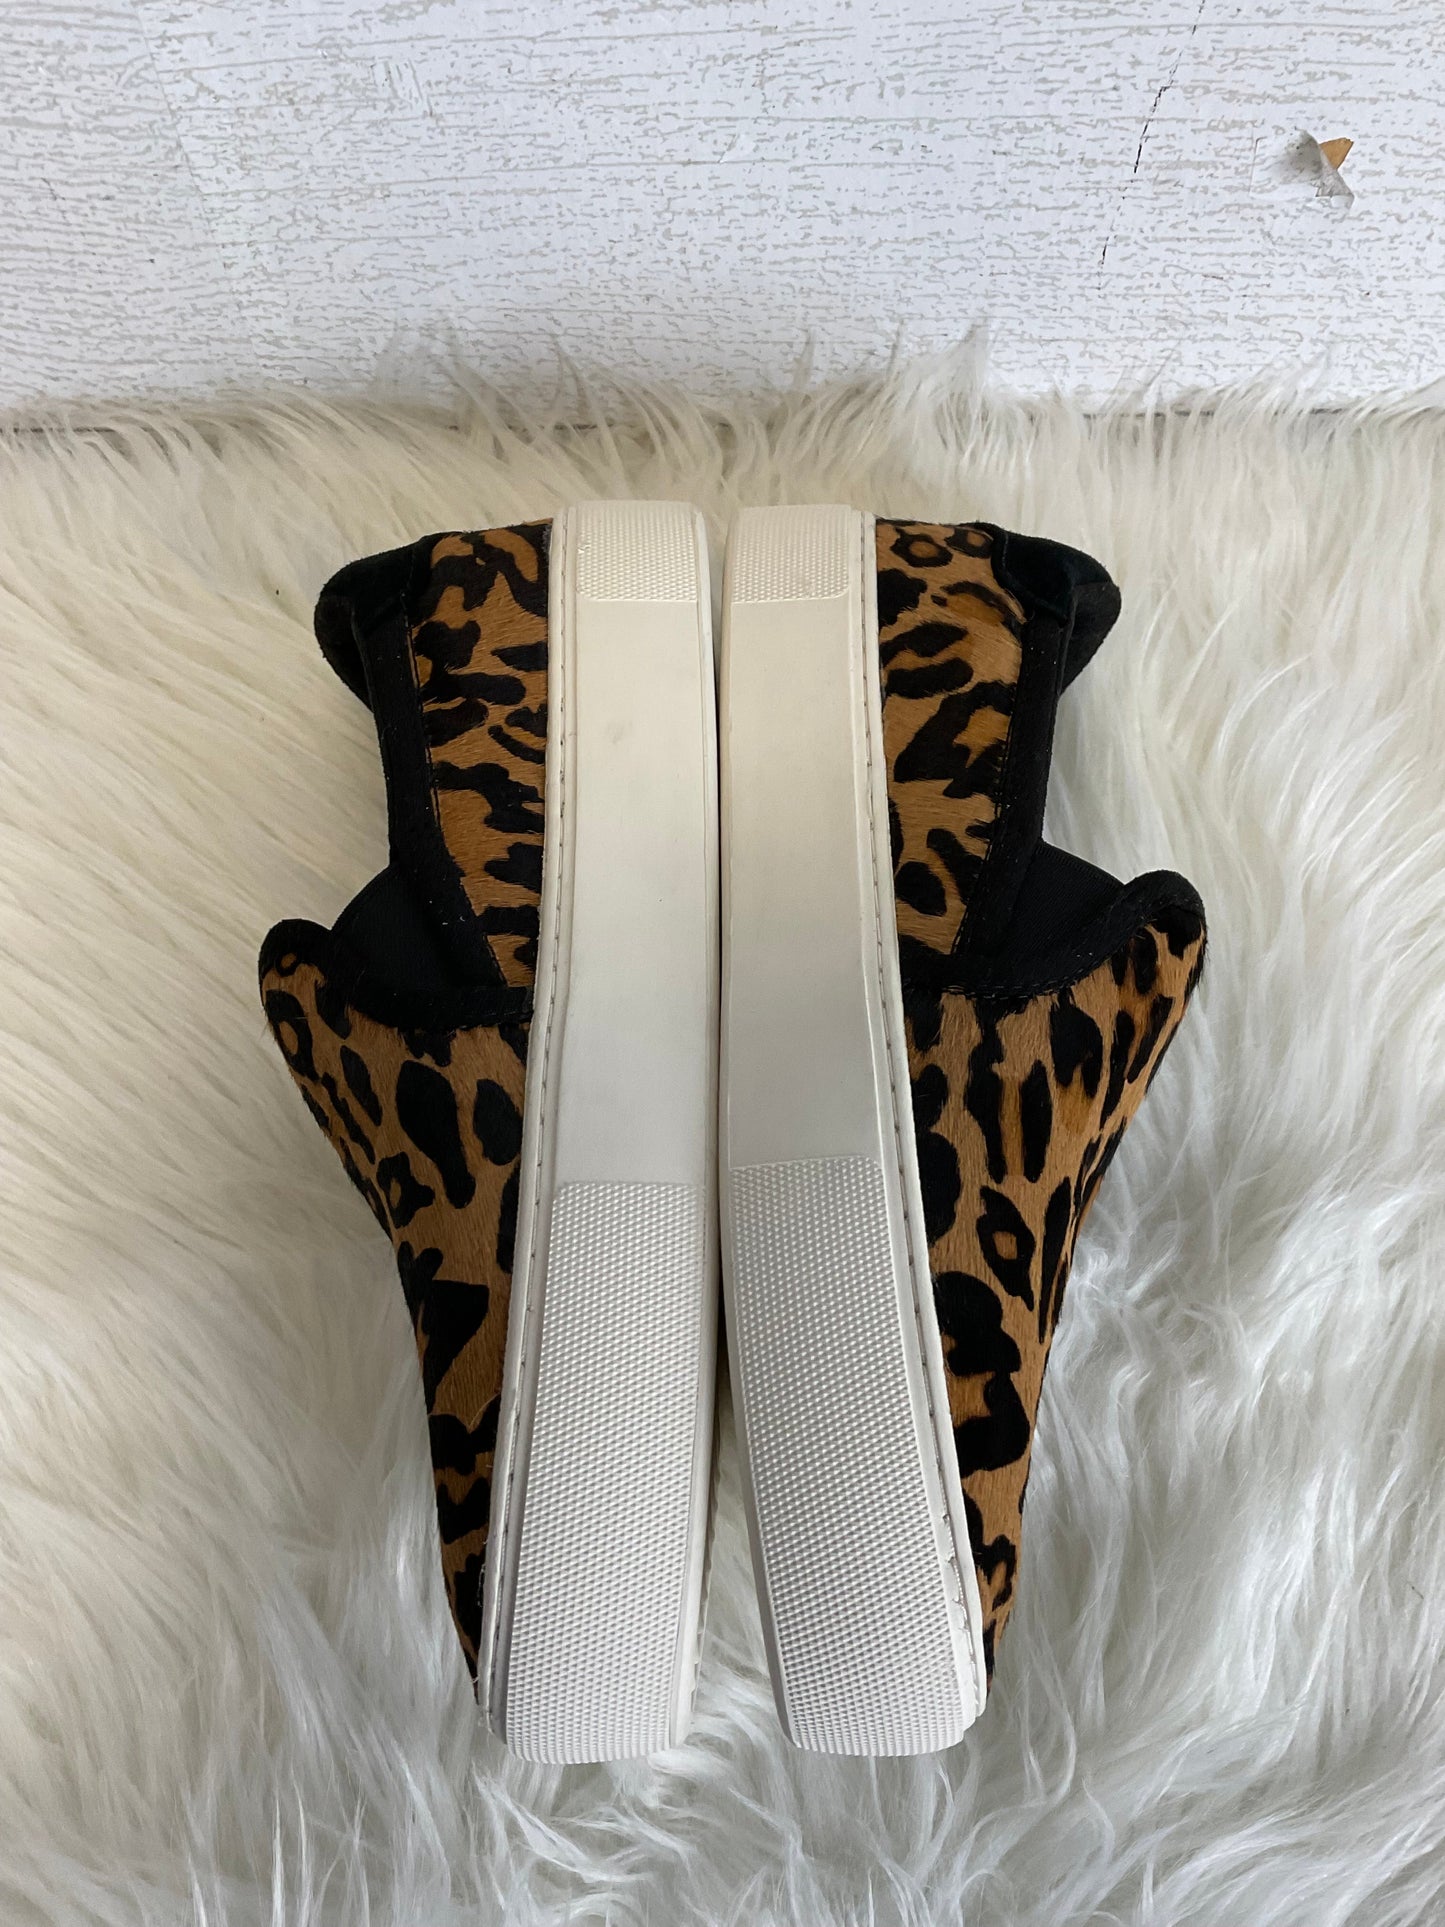 Animal Print Shoes Flats Ugg, Size 7